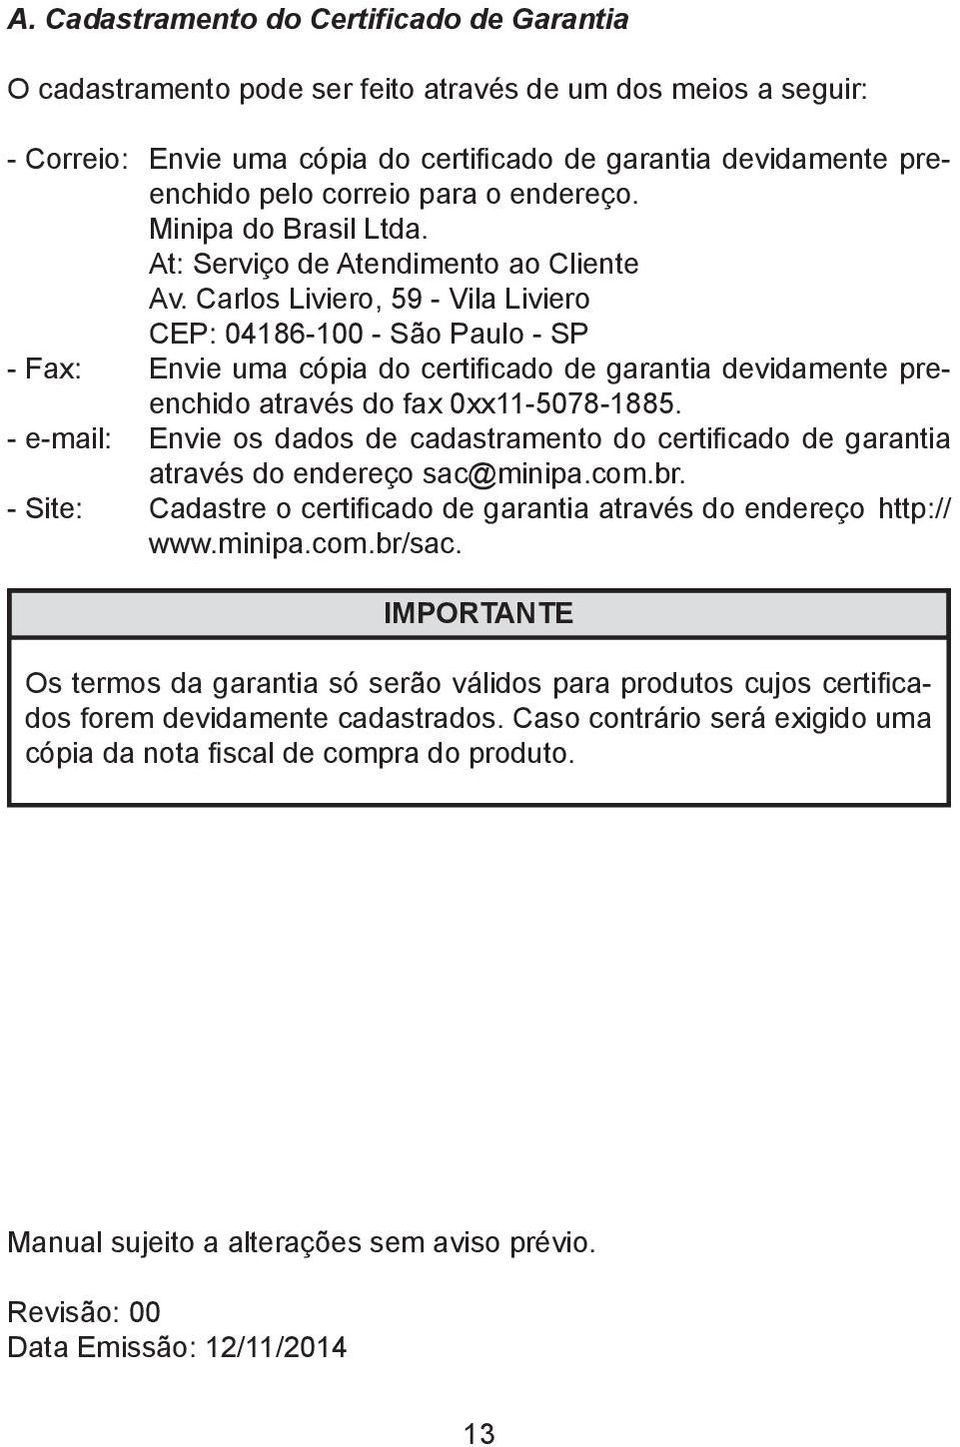 Carlos Liviero, 59 - Vila Liviero CEP: 04186-100 - São Paulo - SP - Fax: Envie uma cópia do certificado de garantia devidamente preenchido através do fax 0xx11-5078-1885.